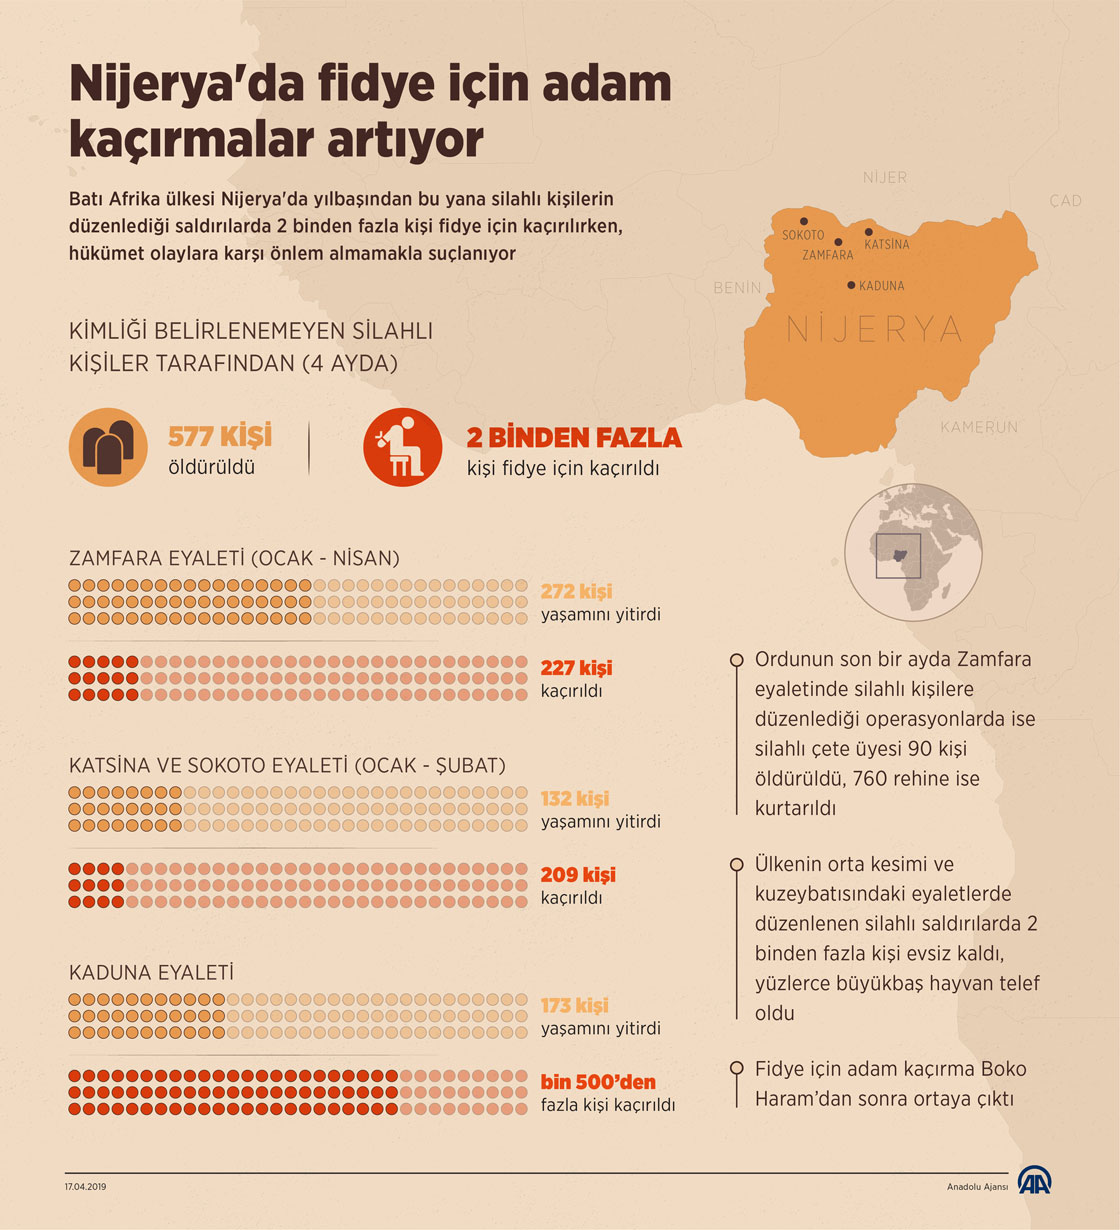 Nijerya'da fidye için adam kaçırmalar artıyor